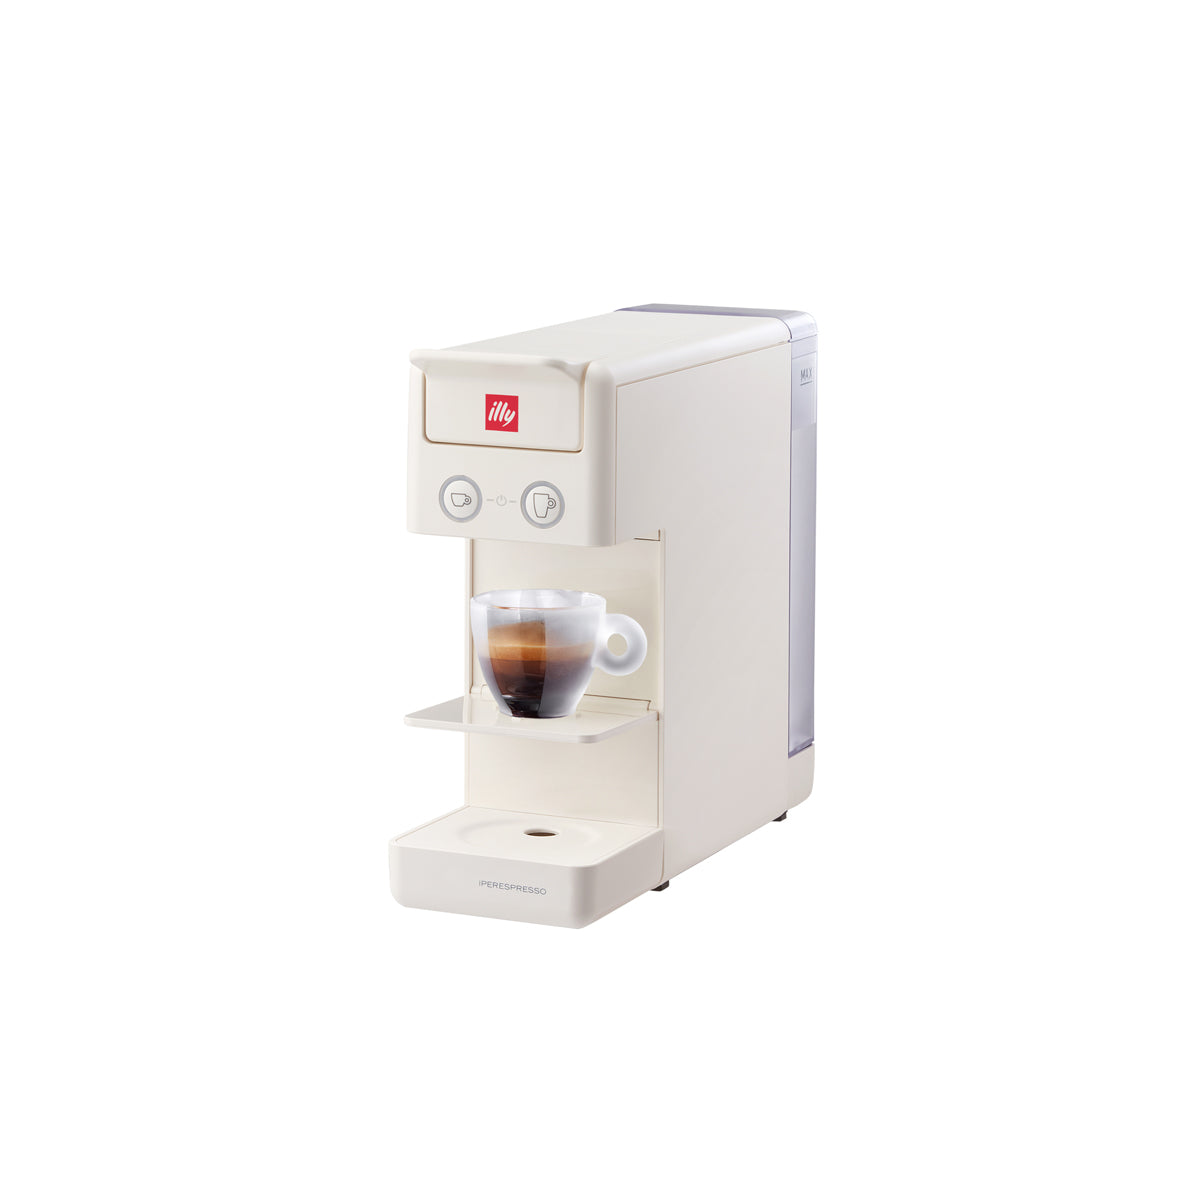 Iperespresso Y3.3 Home Espresso Capsule Coffee Machine White